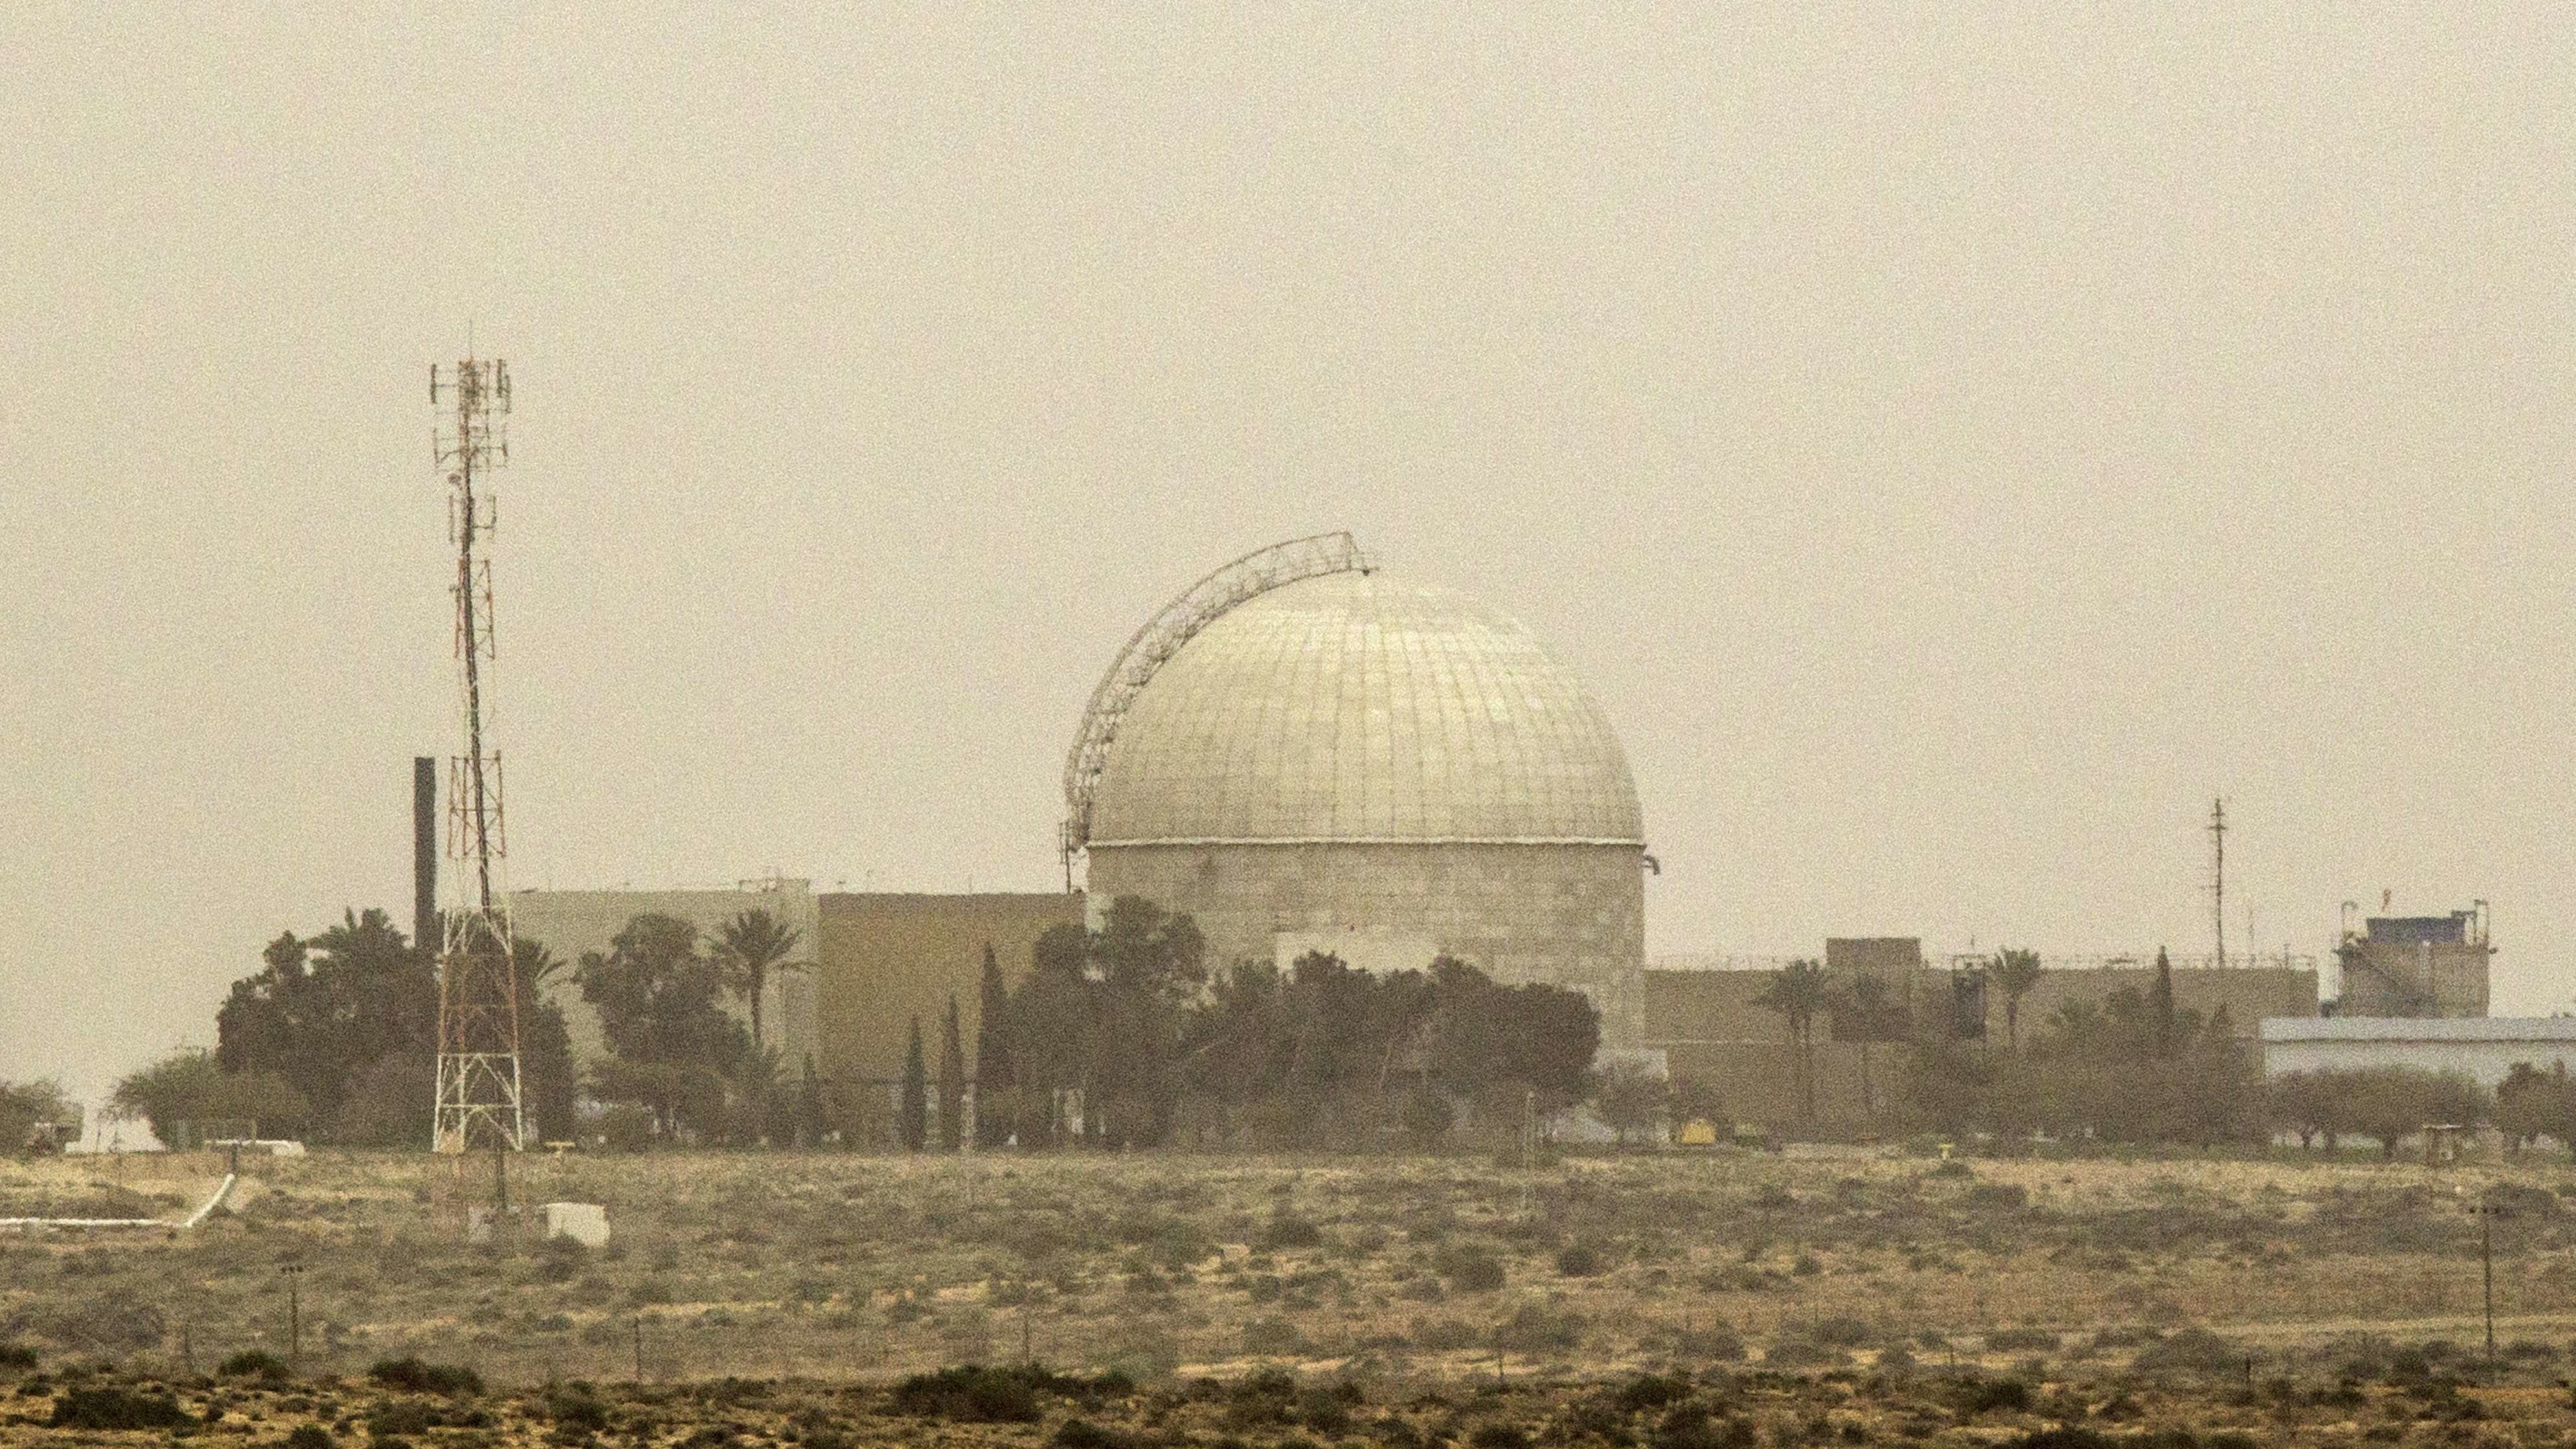 FP: Carter Administration Hushed Up Israeli Nuke Test